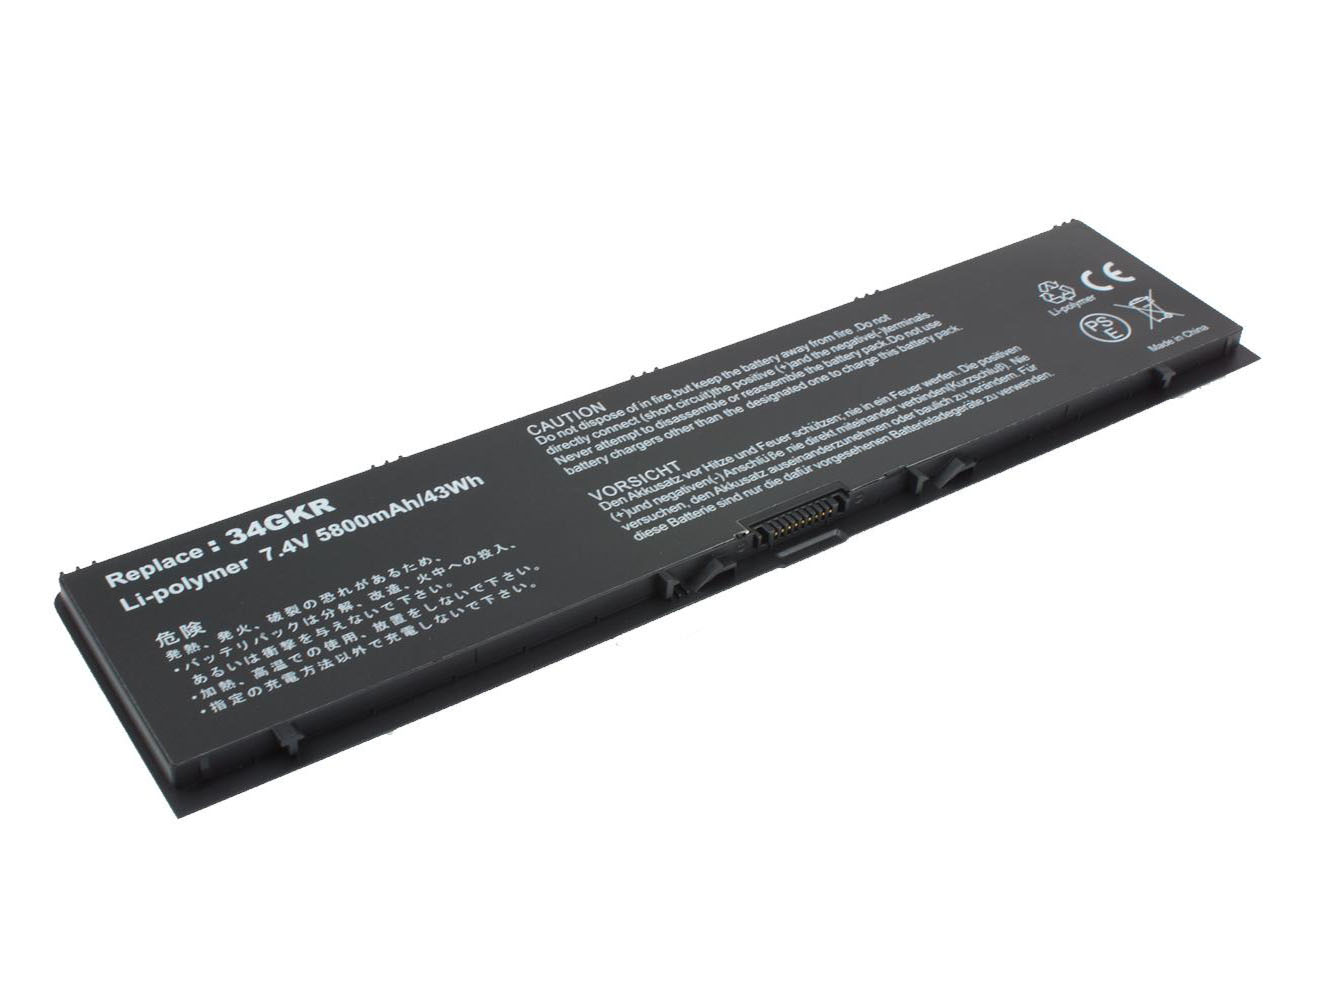 Remplacement compatible pour la batterie d'ordinateur portable tactile Dell Latitude 14 7000, Latitude E7440, Latitude E7440